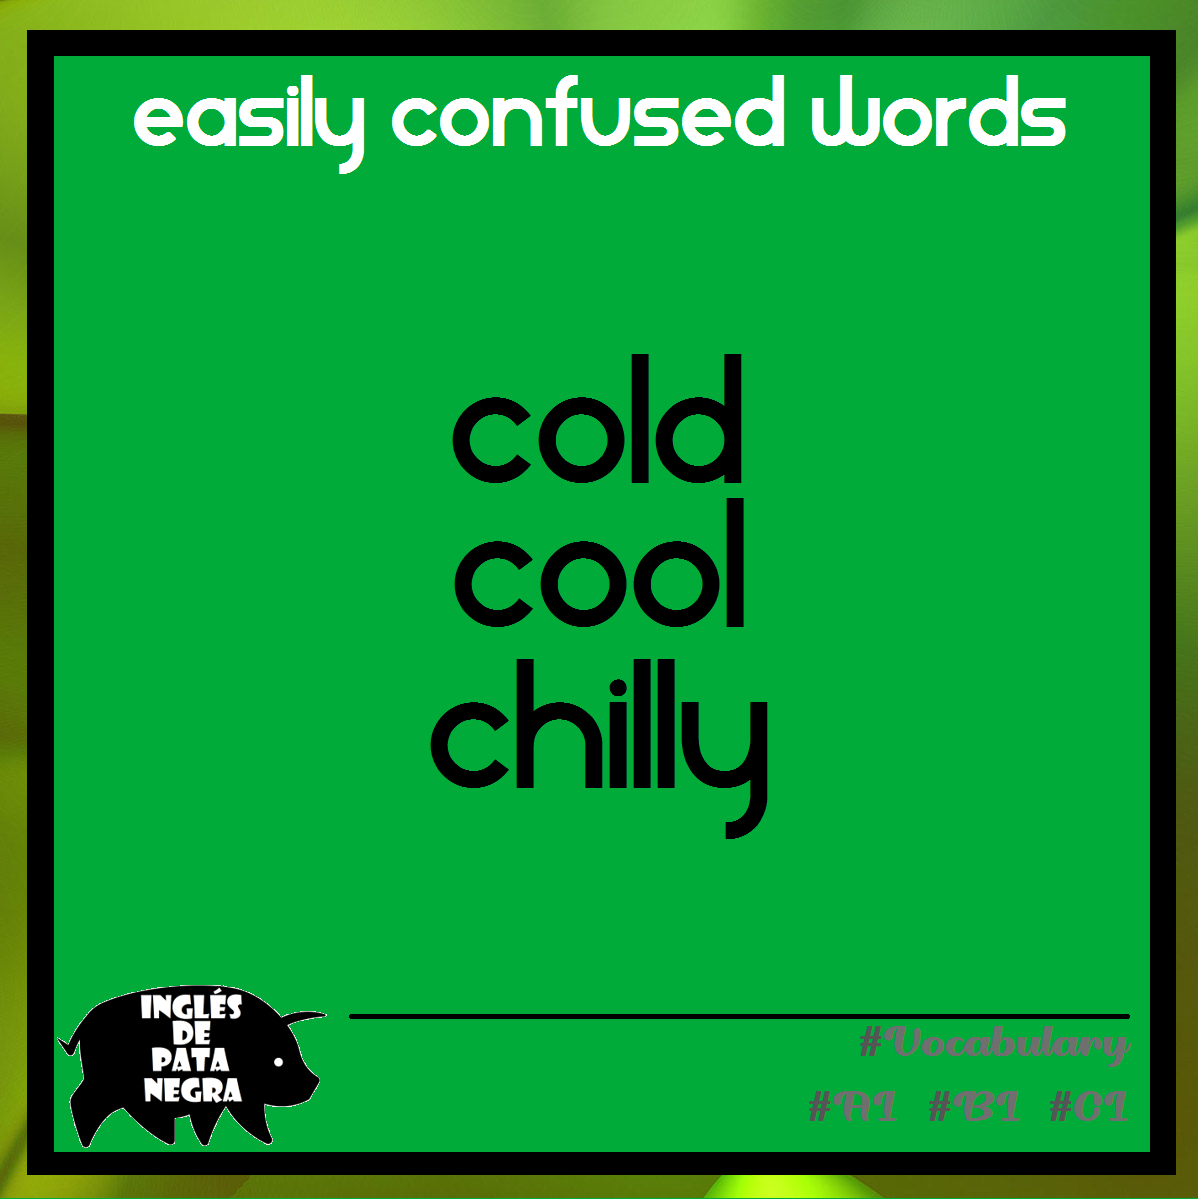 COLD, COOL e CHILLY - Saiba quando usar cada um em inglês